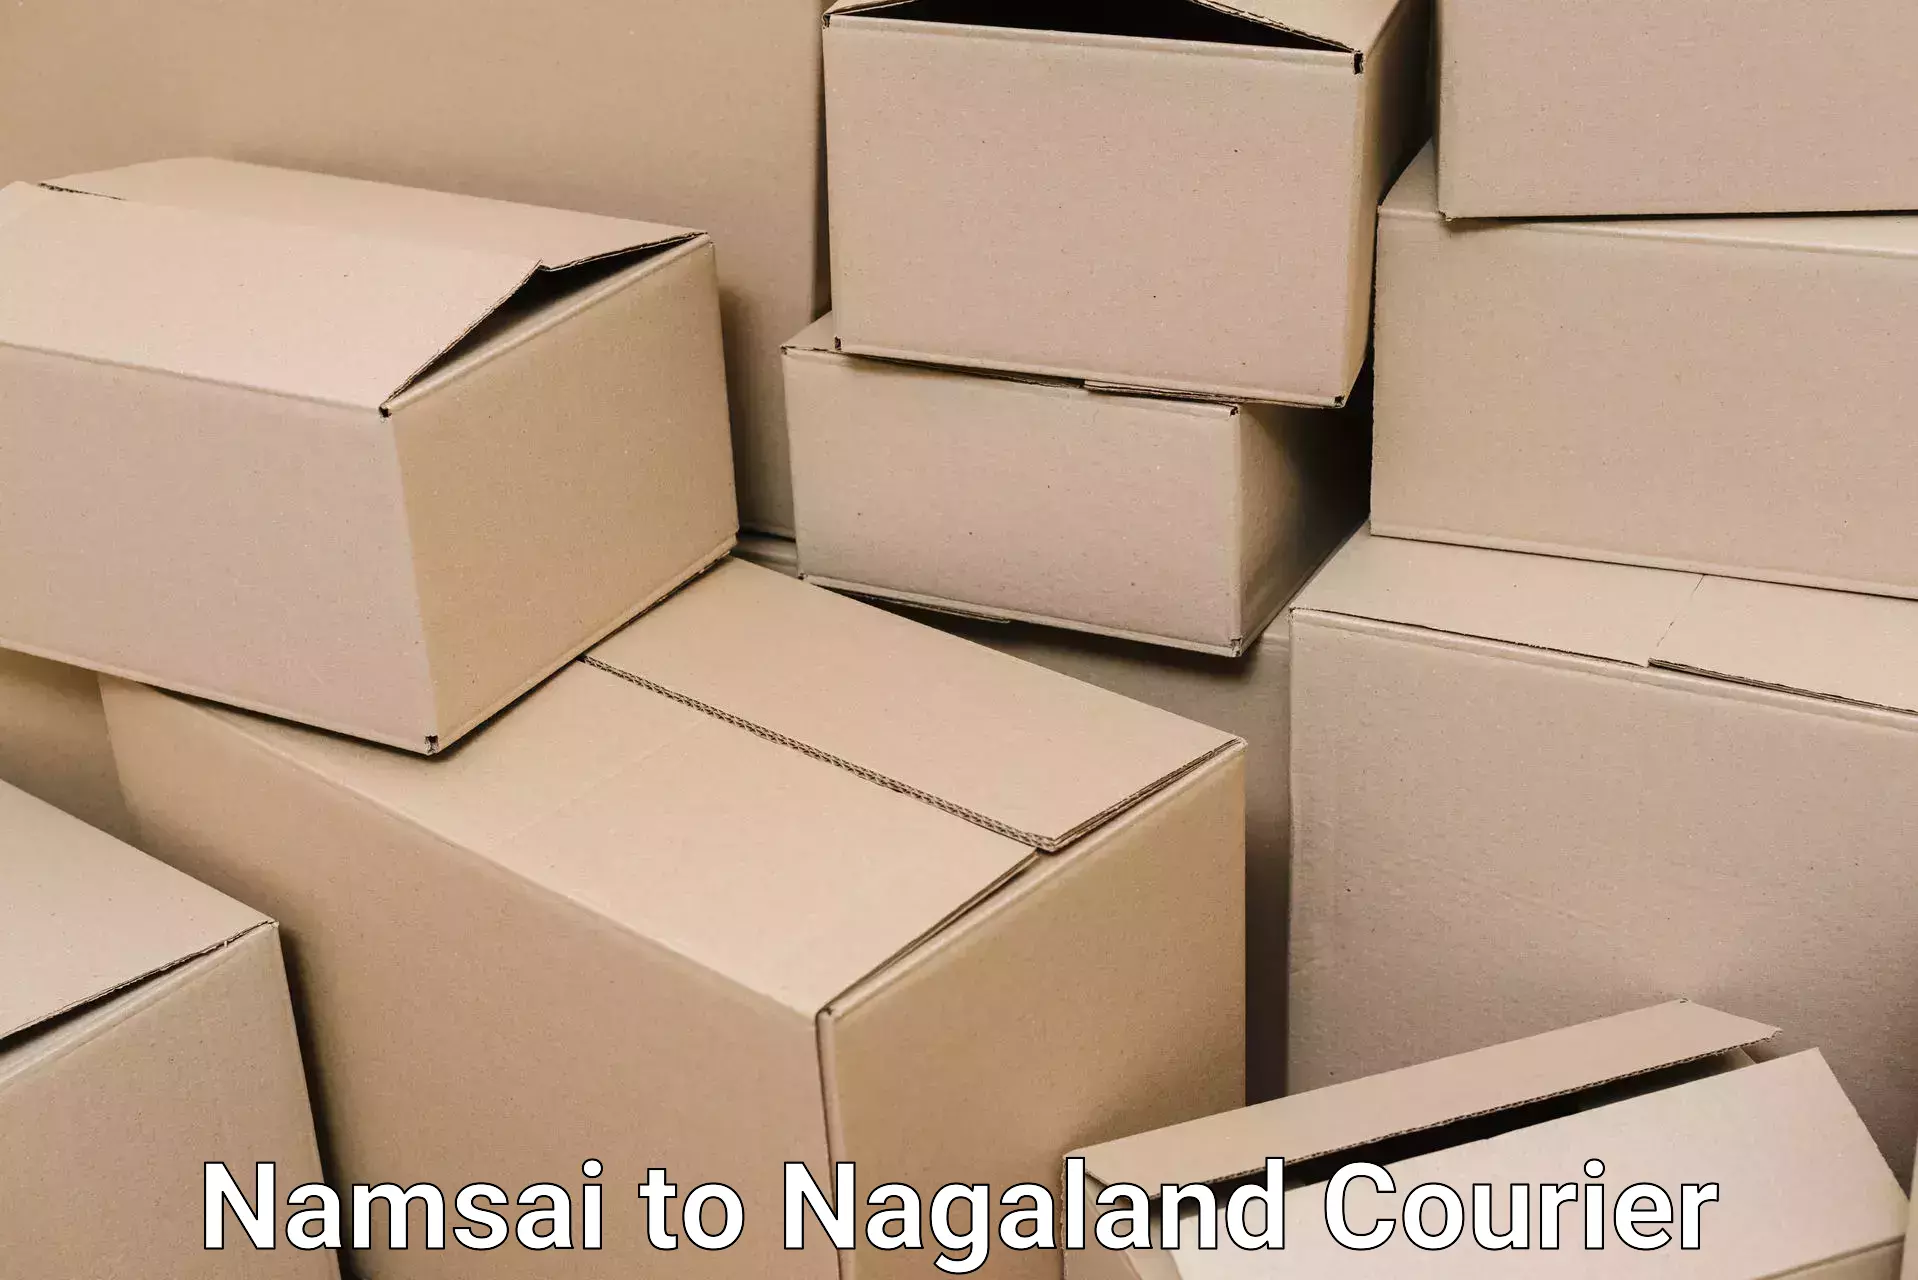 Professional moving company Namsai to NIT Nagaland